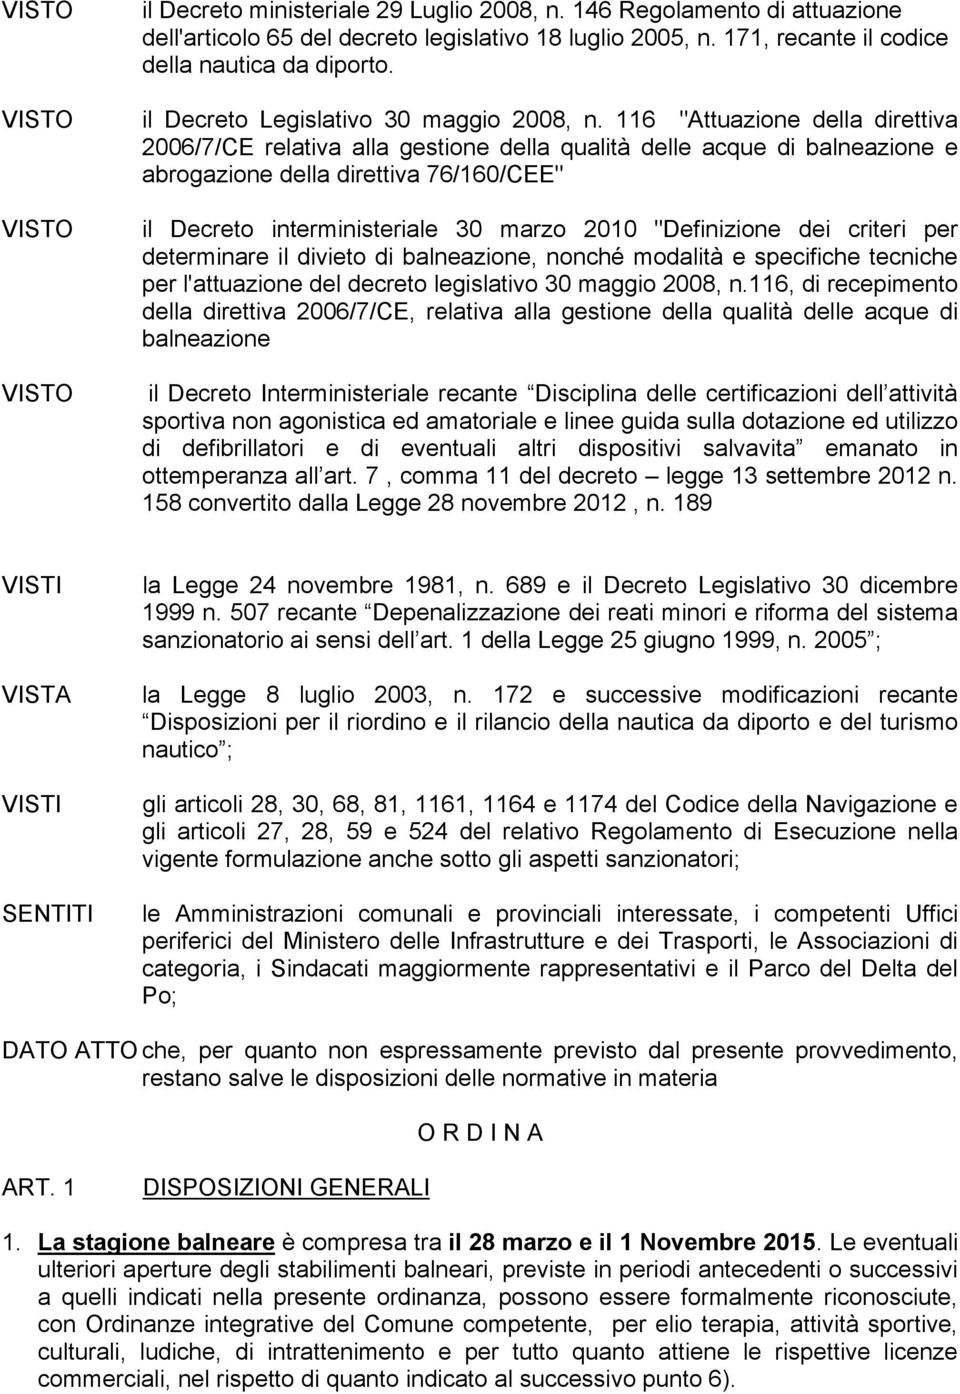 116 "Attuazione della direttiva 2006/7/CE relativa alla gestione della qualità delle acque di balneazione e abrogazione della direttiva 76/160/CEE" il Decreto interministeriale 30 marzo 2010